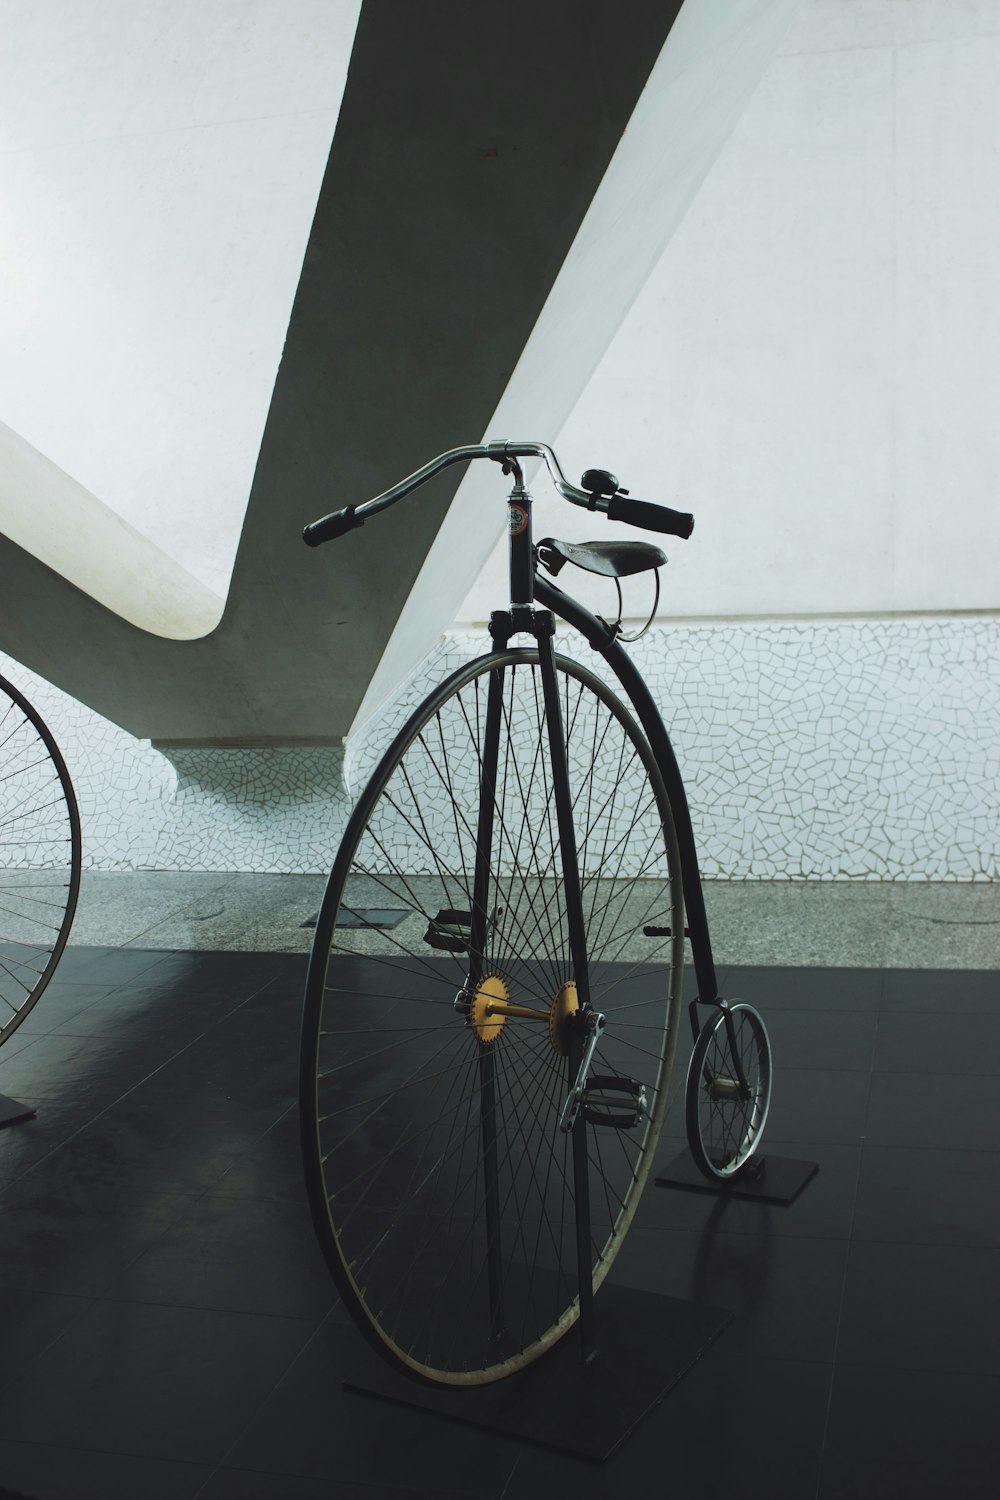 vélo de séparation penny noir en niveaux de gris photographie